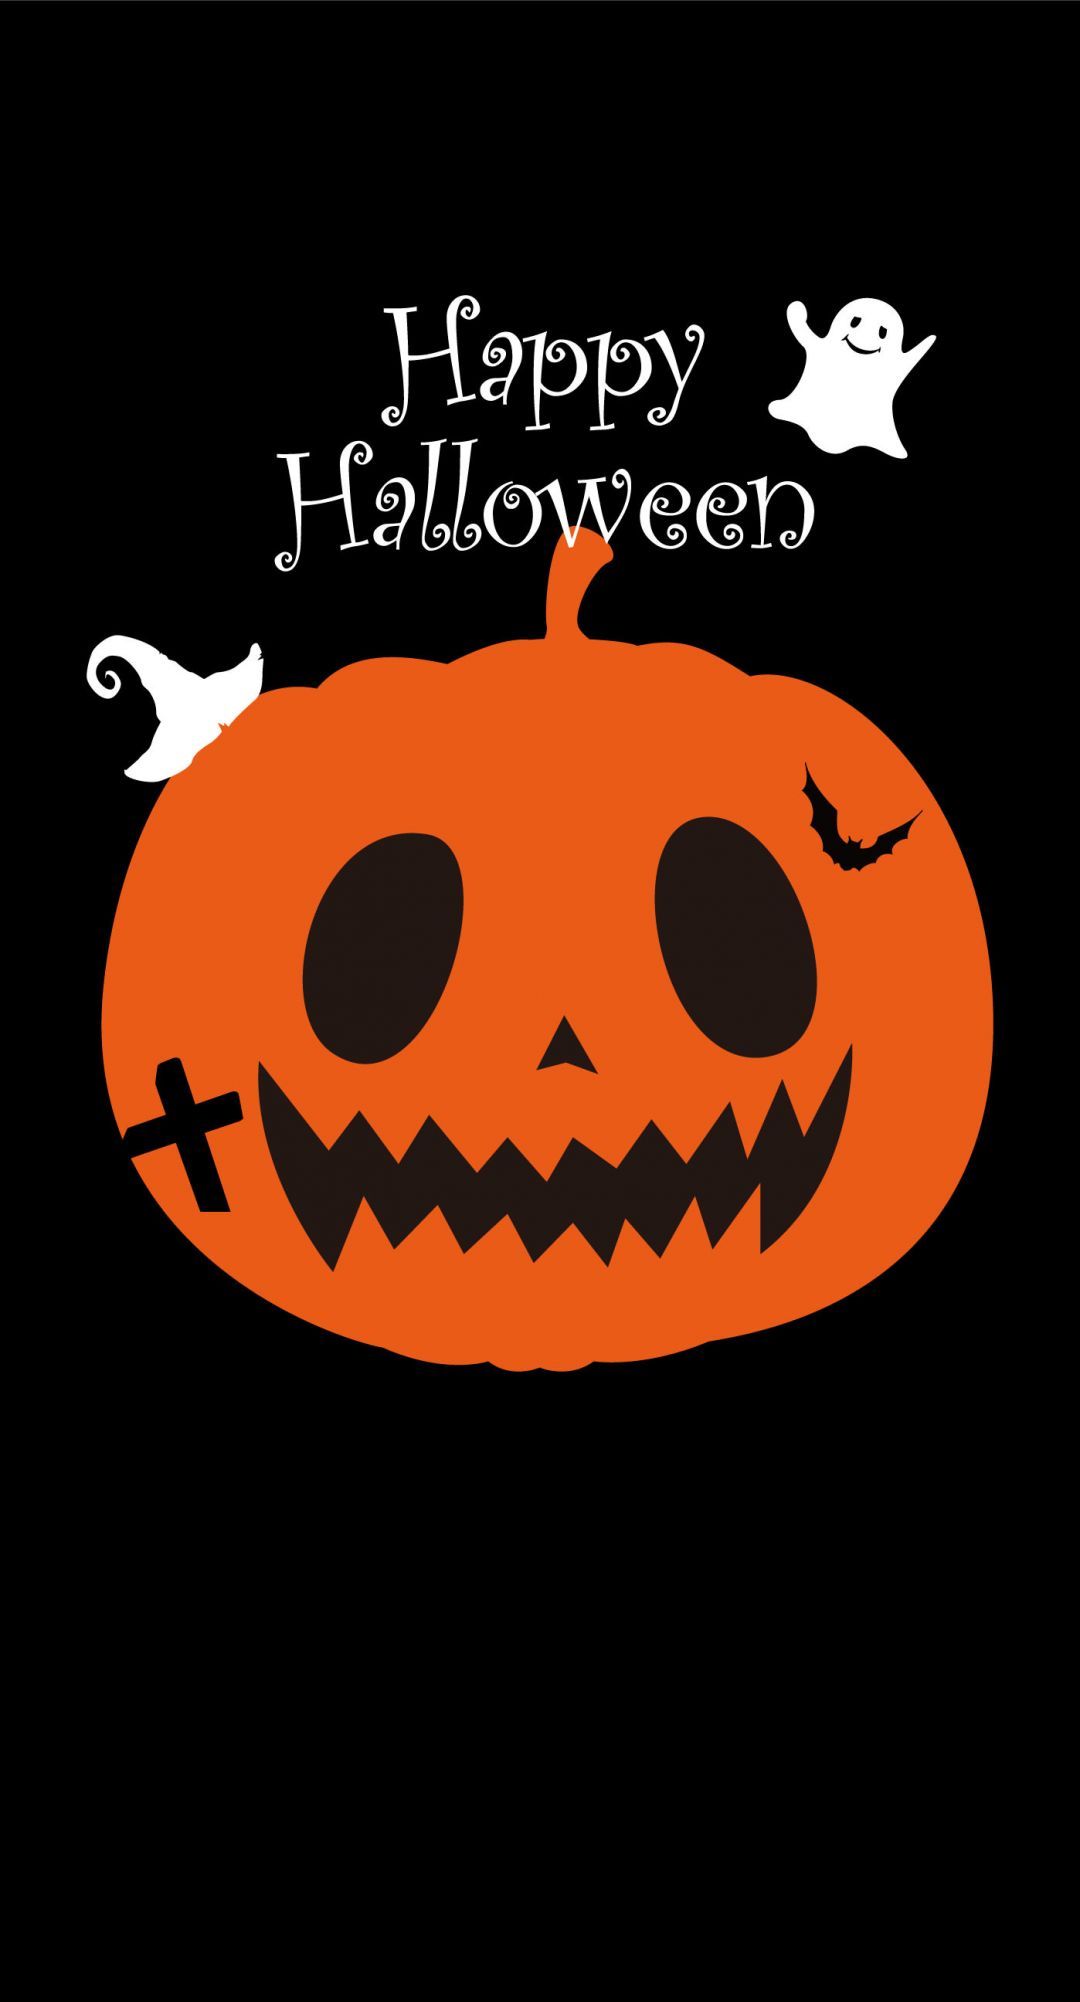 Live Halloween Wallpaper for iPhone, iPhone, Desktop HD Background / Wallpaper (1080p, 4k) (1398x2592) (2020)